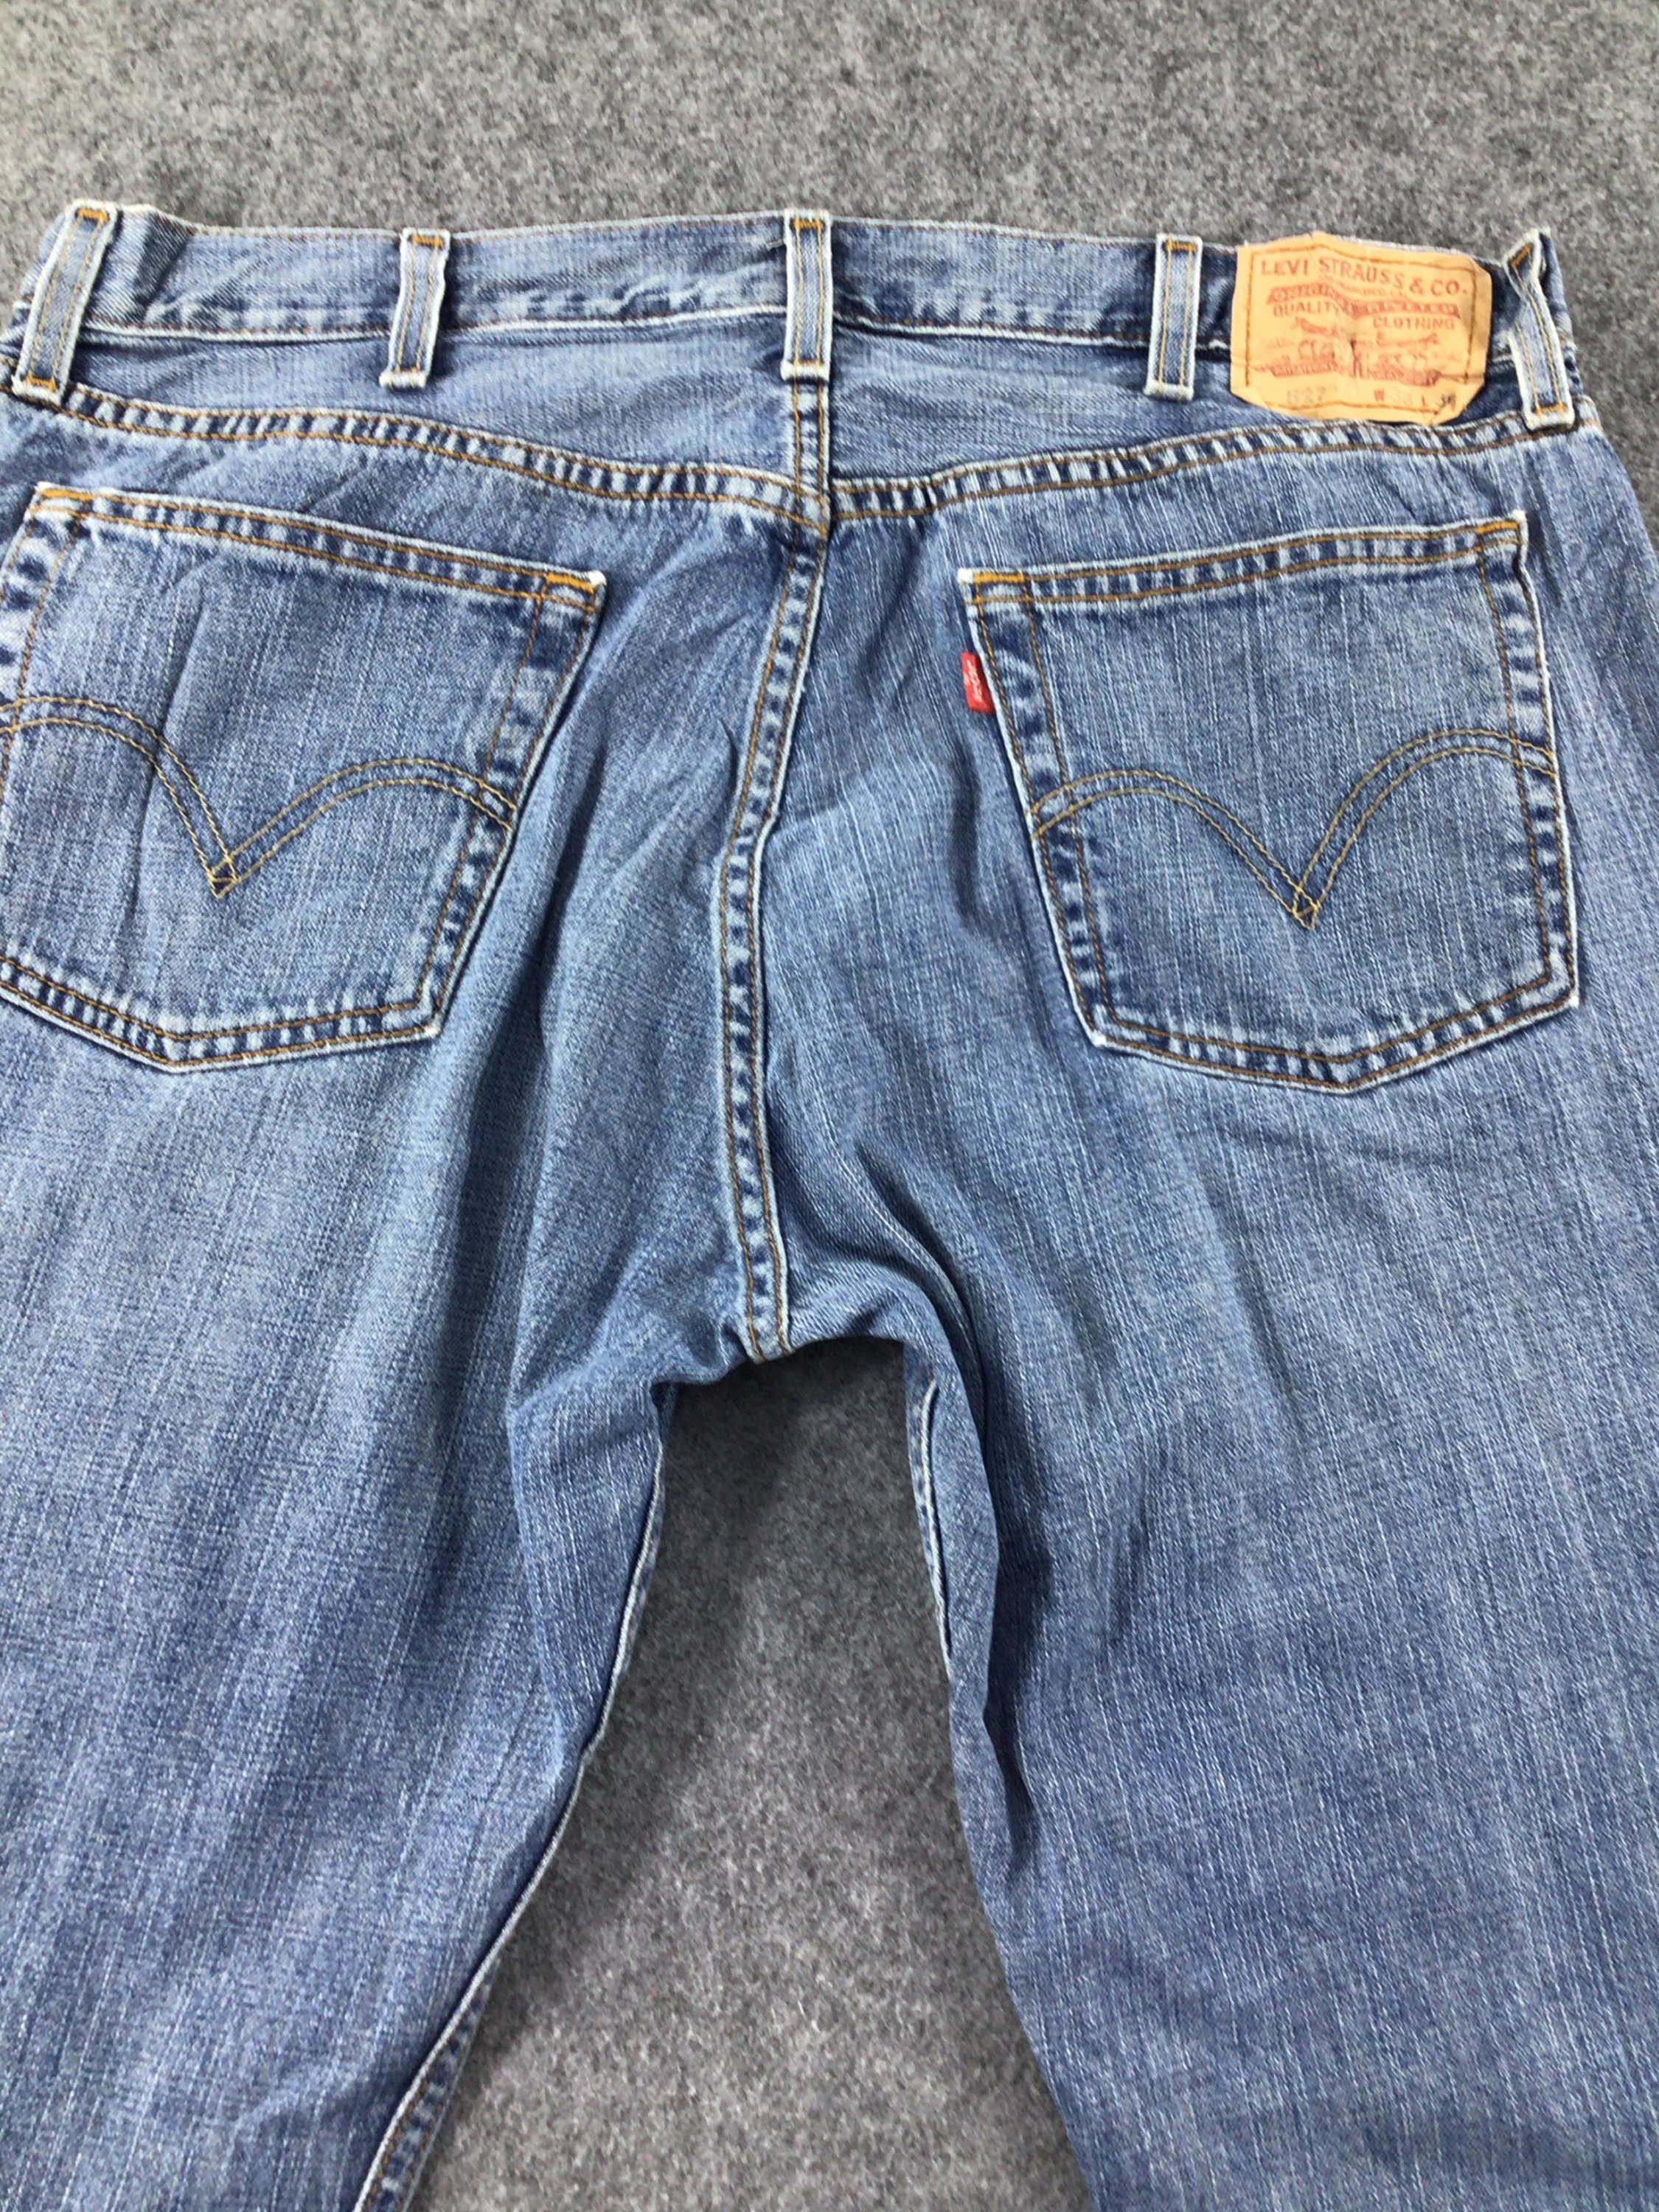 Vintage Levi's 527 Low Boot Cut Jeans 37 x 29 | Etsy